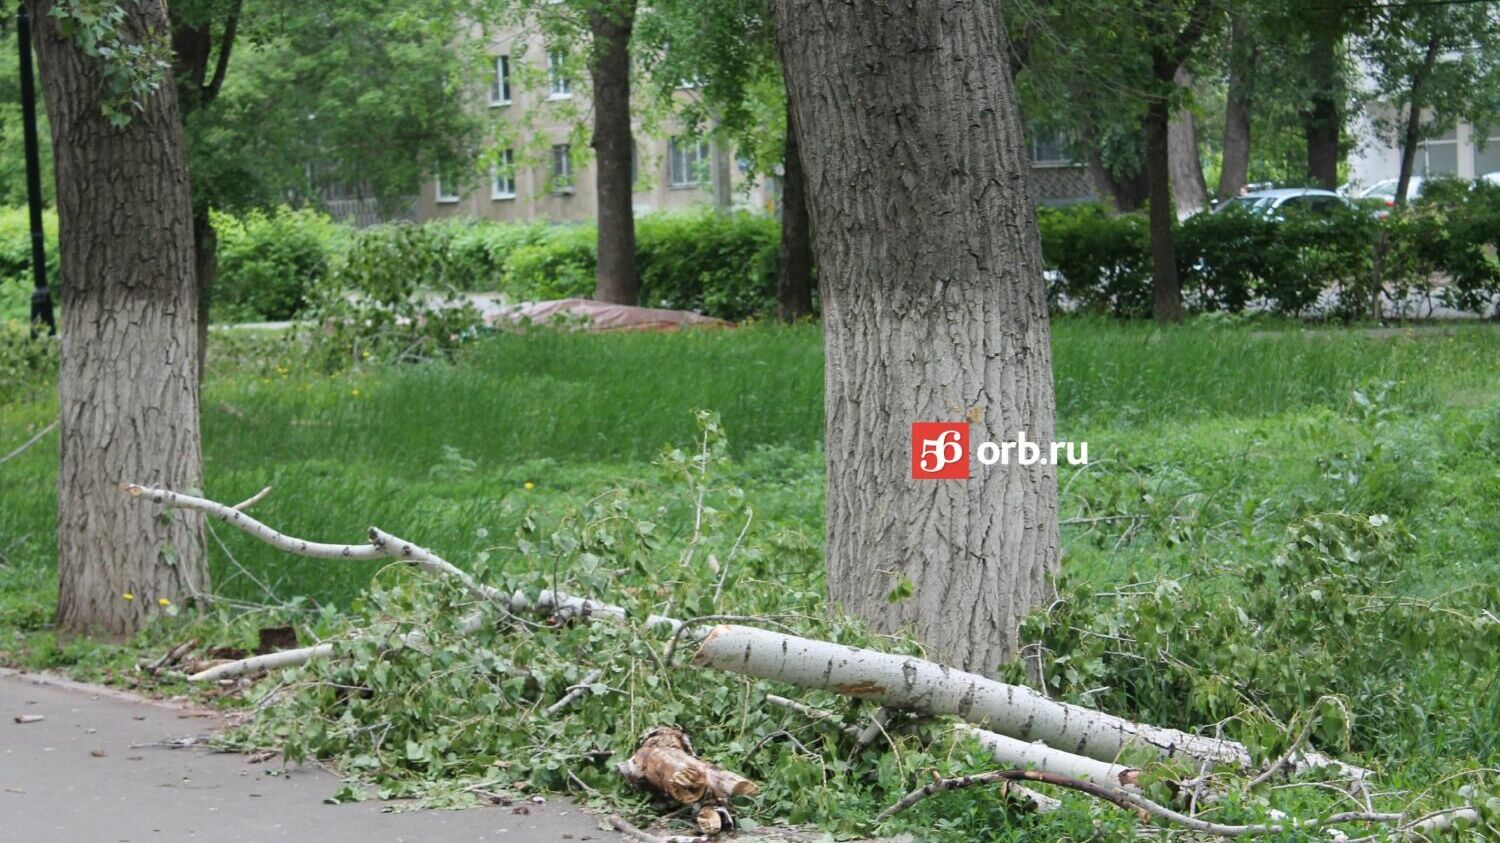 Спиленные ветки свалены в кучи по всему парку Гуськова